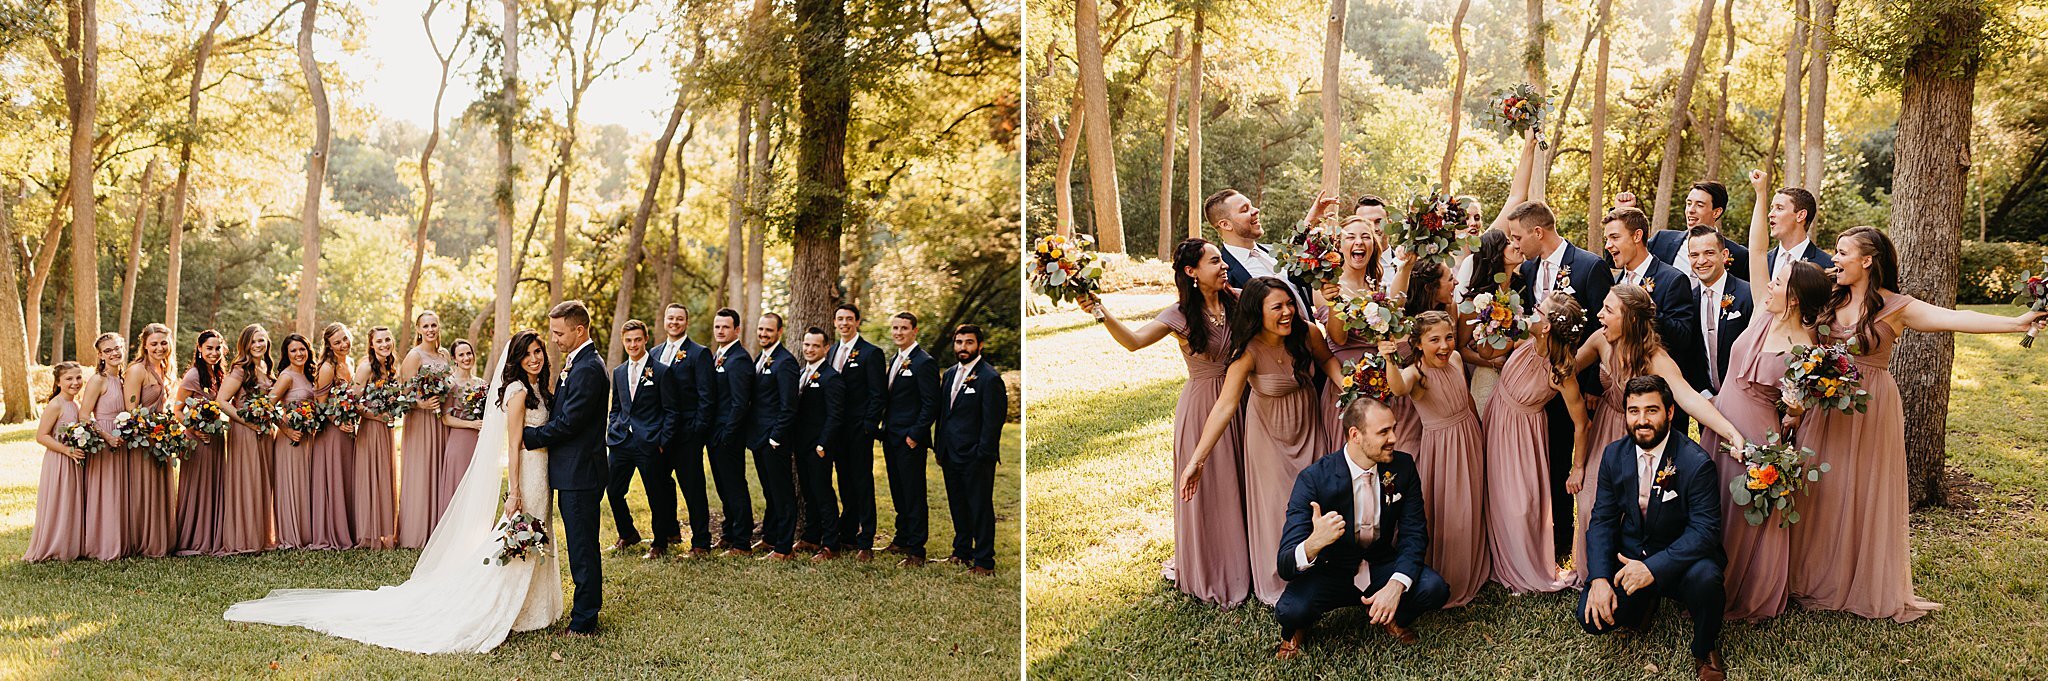 Wilderlove Co_Wedding Photographer_Dallas Wedding_Dallas Arboretum Wedding_Garden Party Wedding_Catholic Wedding_North Texas Photographer_0217.jpg